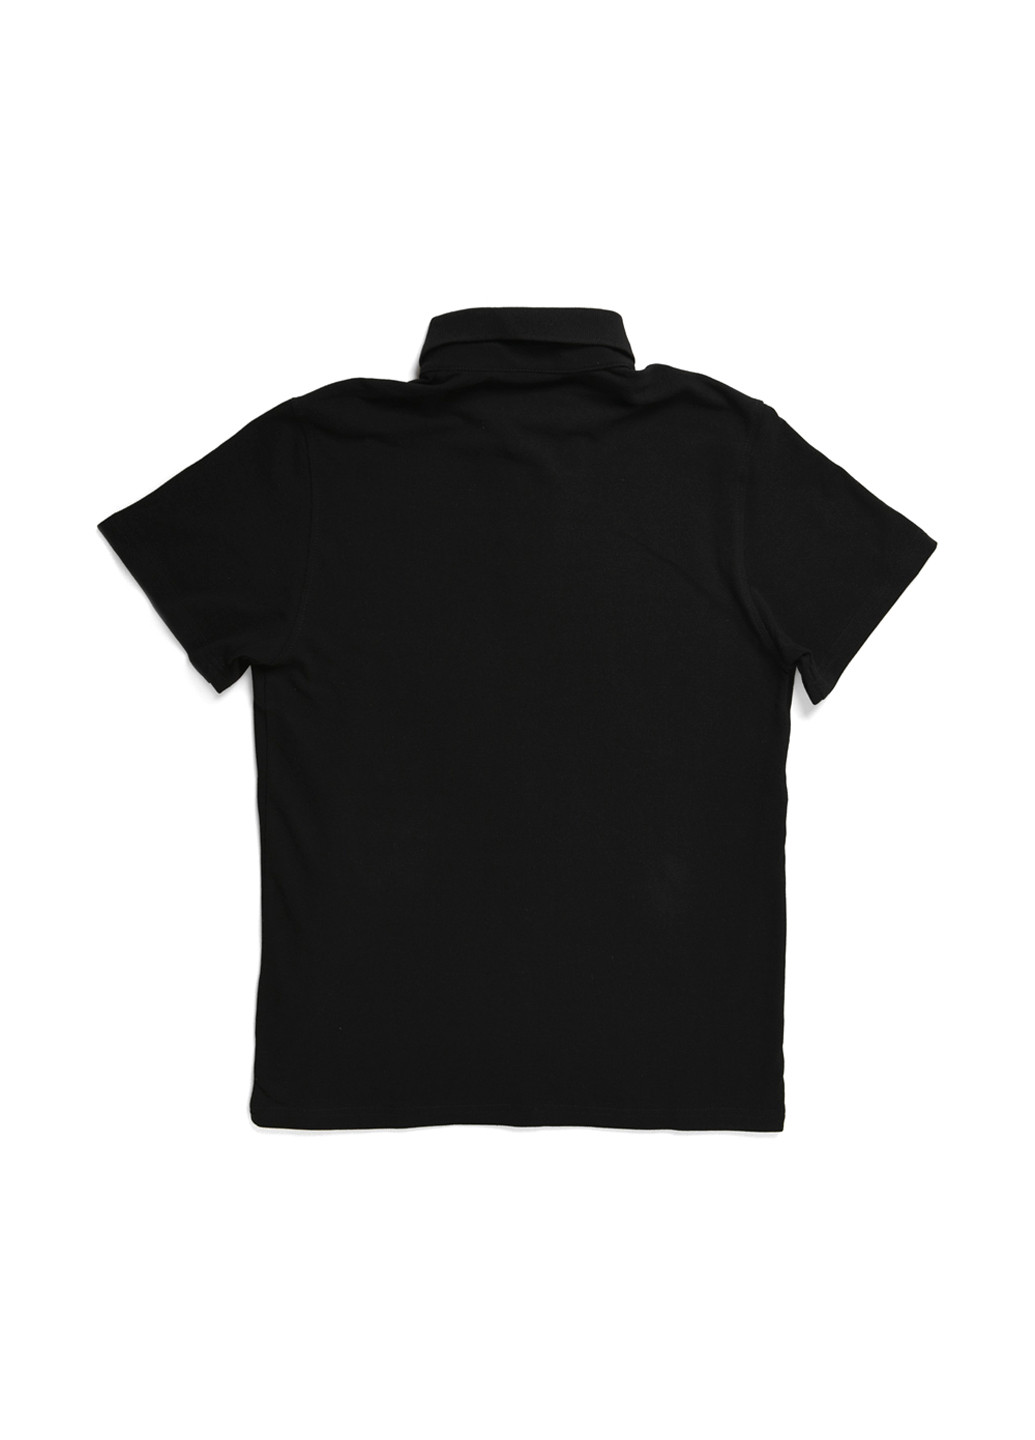 Черная футболка-поло для мужчин CRC однотонная